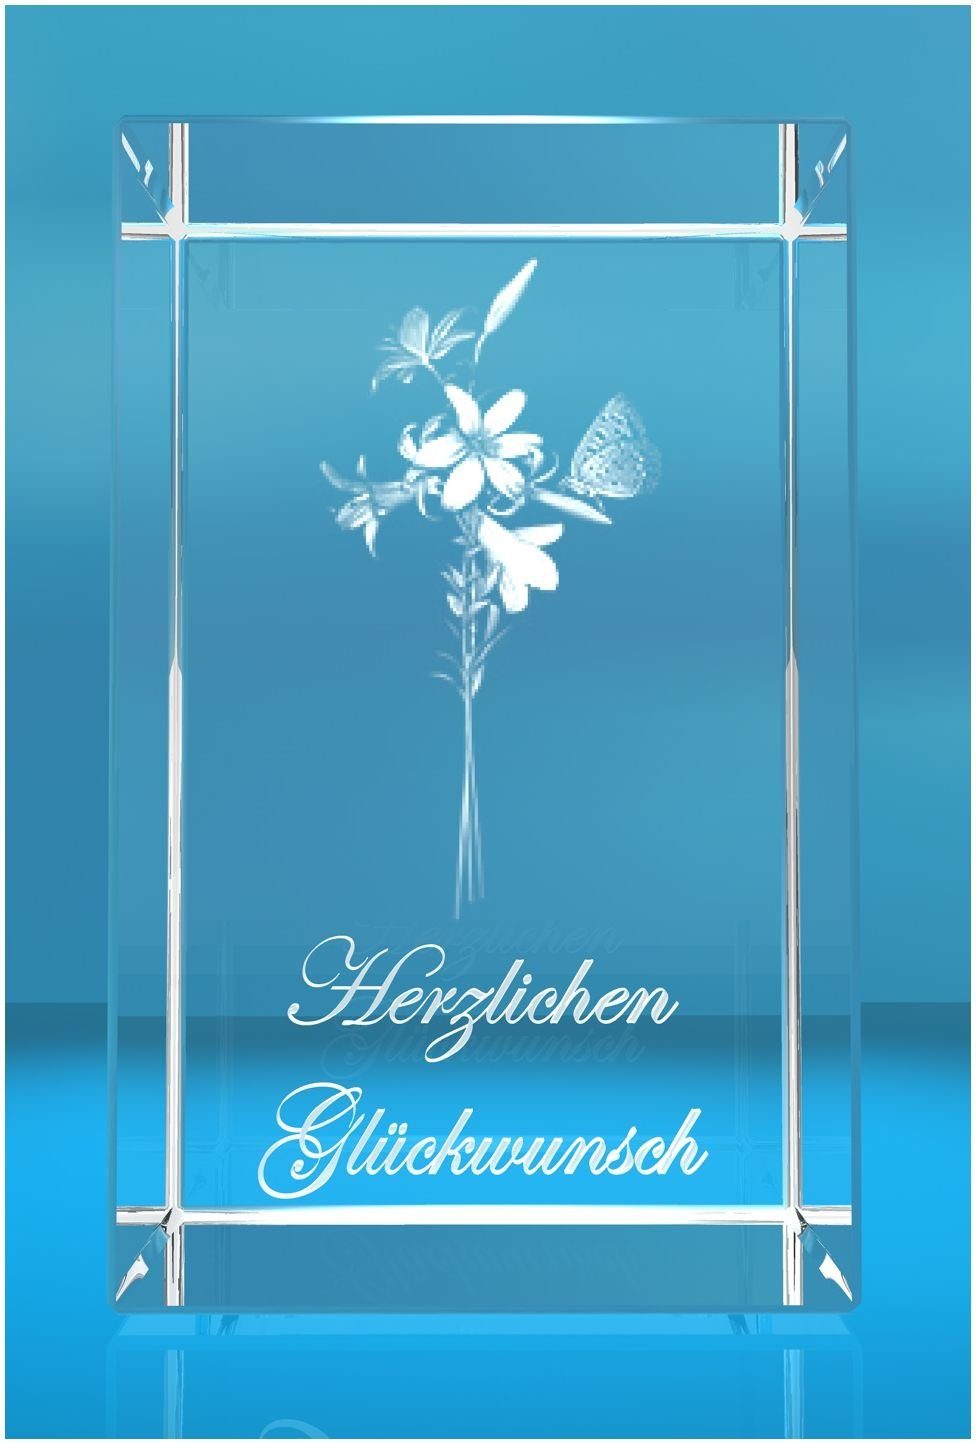 Germany, Lilien Motiv: Made 3D Herzlichen VIP-LASER Hochwertige Glasquader Geschenkbox, in Familienbetrieb Dekofigur Glückwunsch,